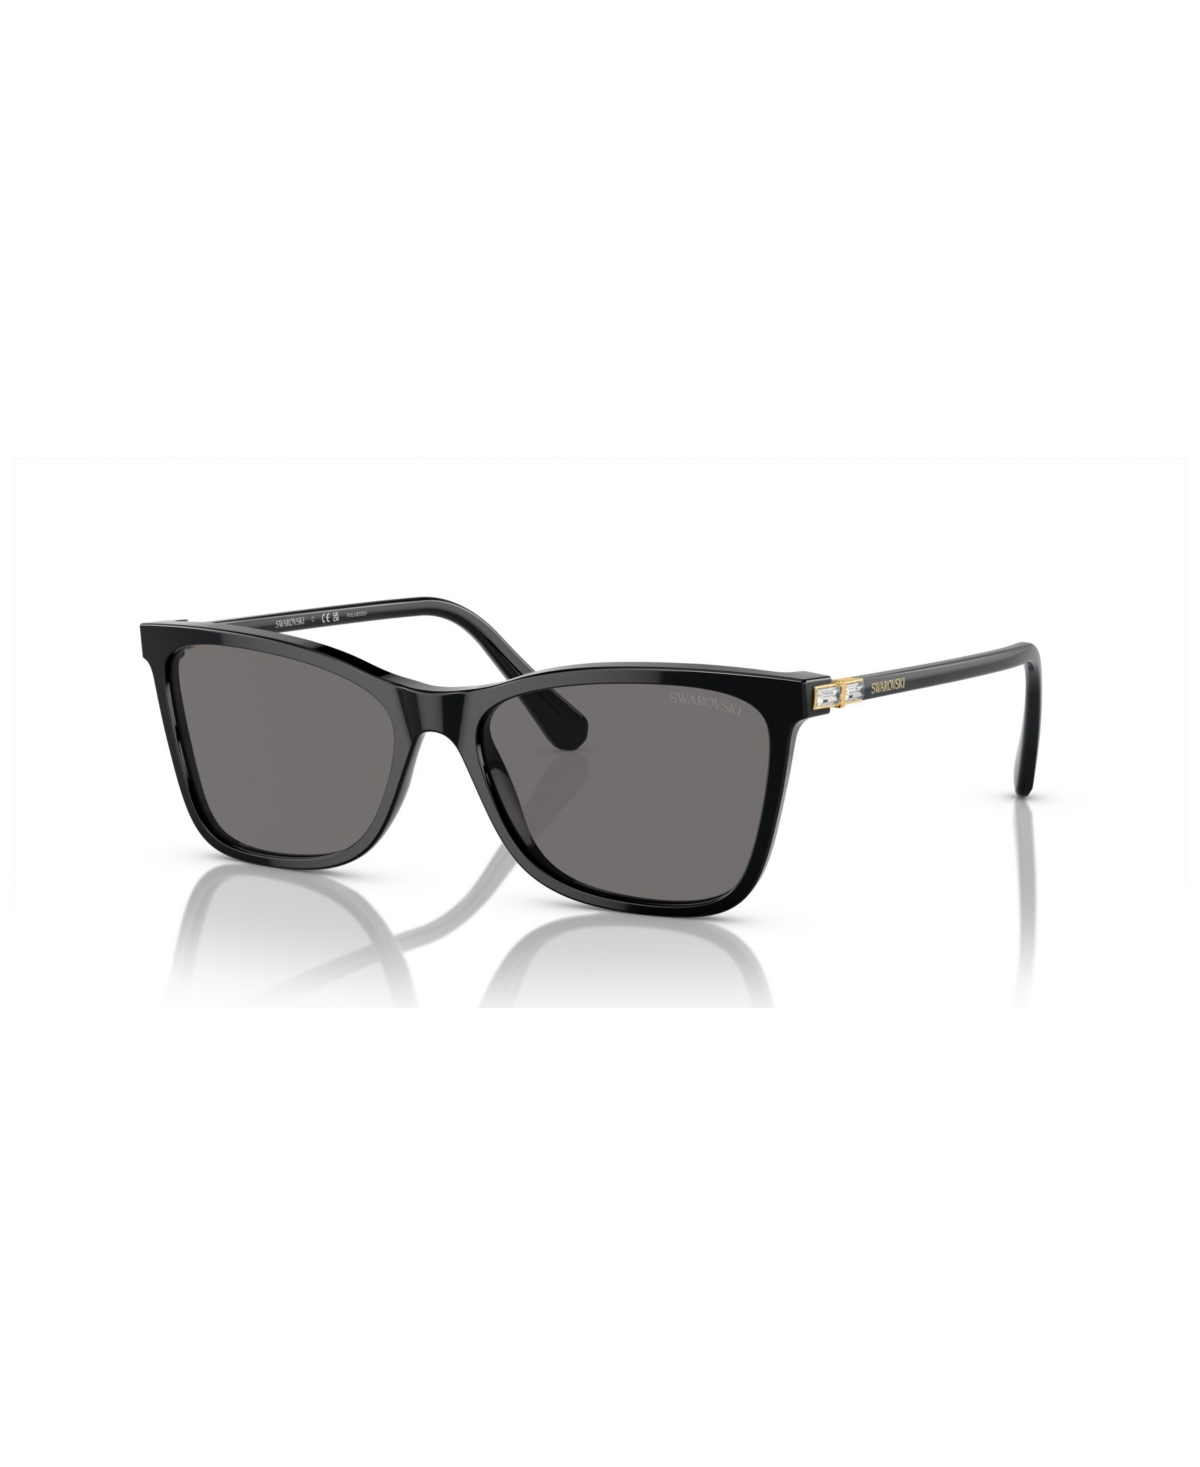 Swarovski Women's Polarized Sunglasses, Sk6004 In Black